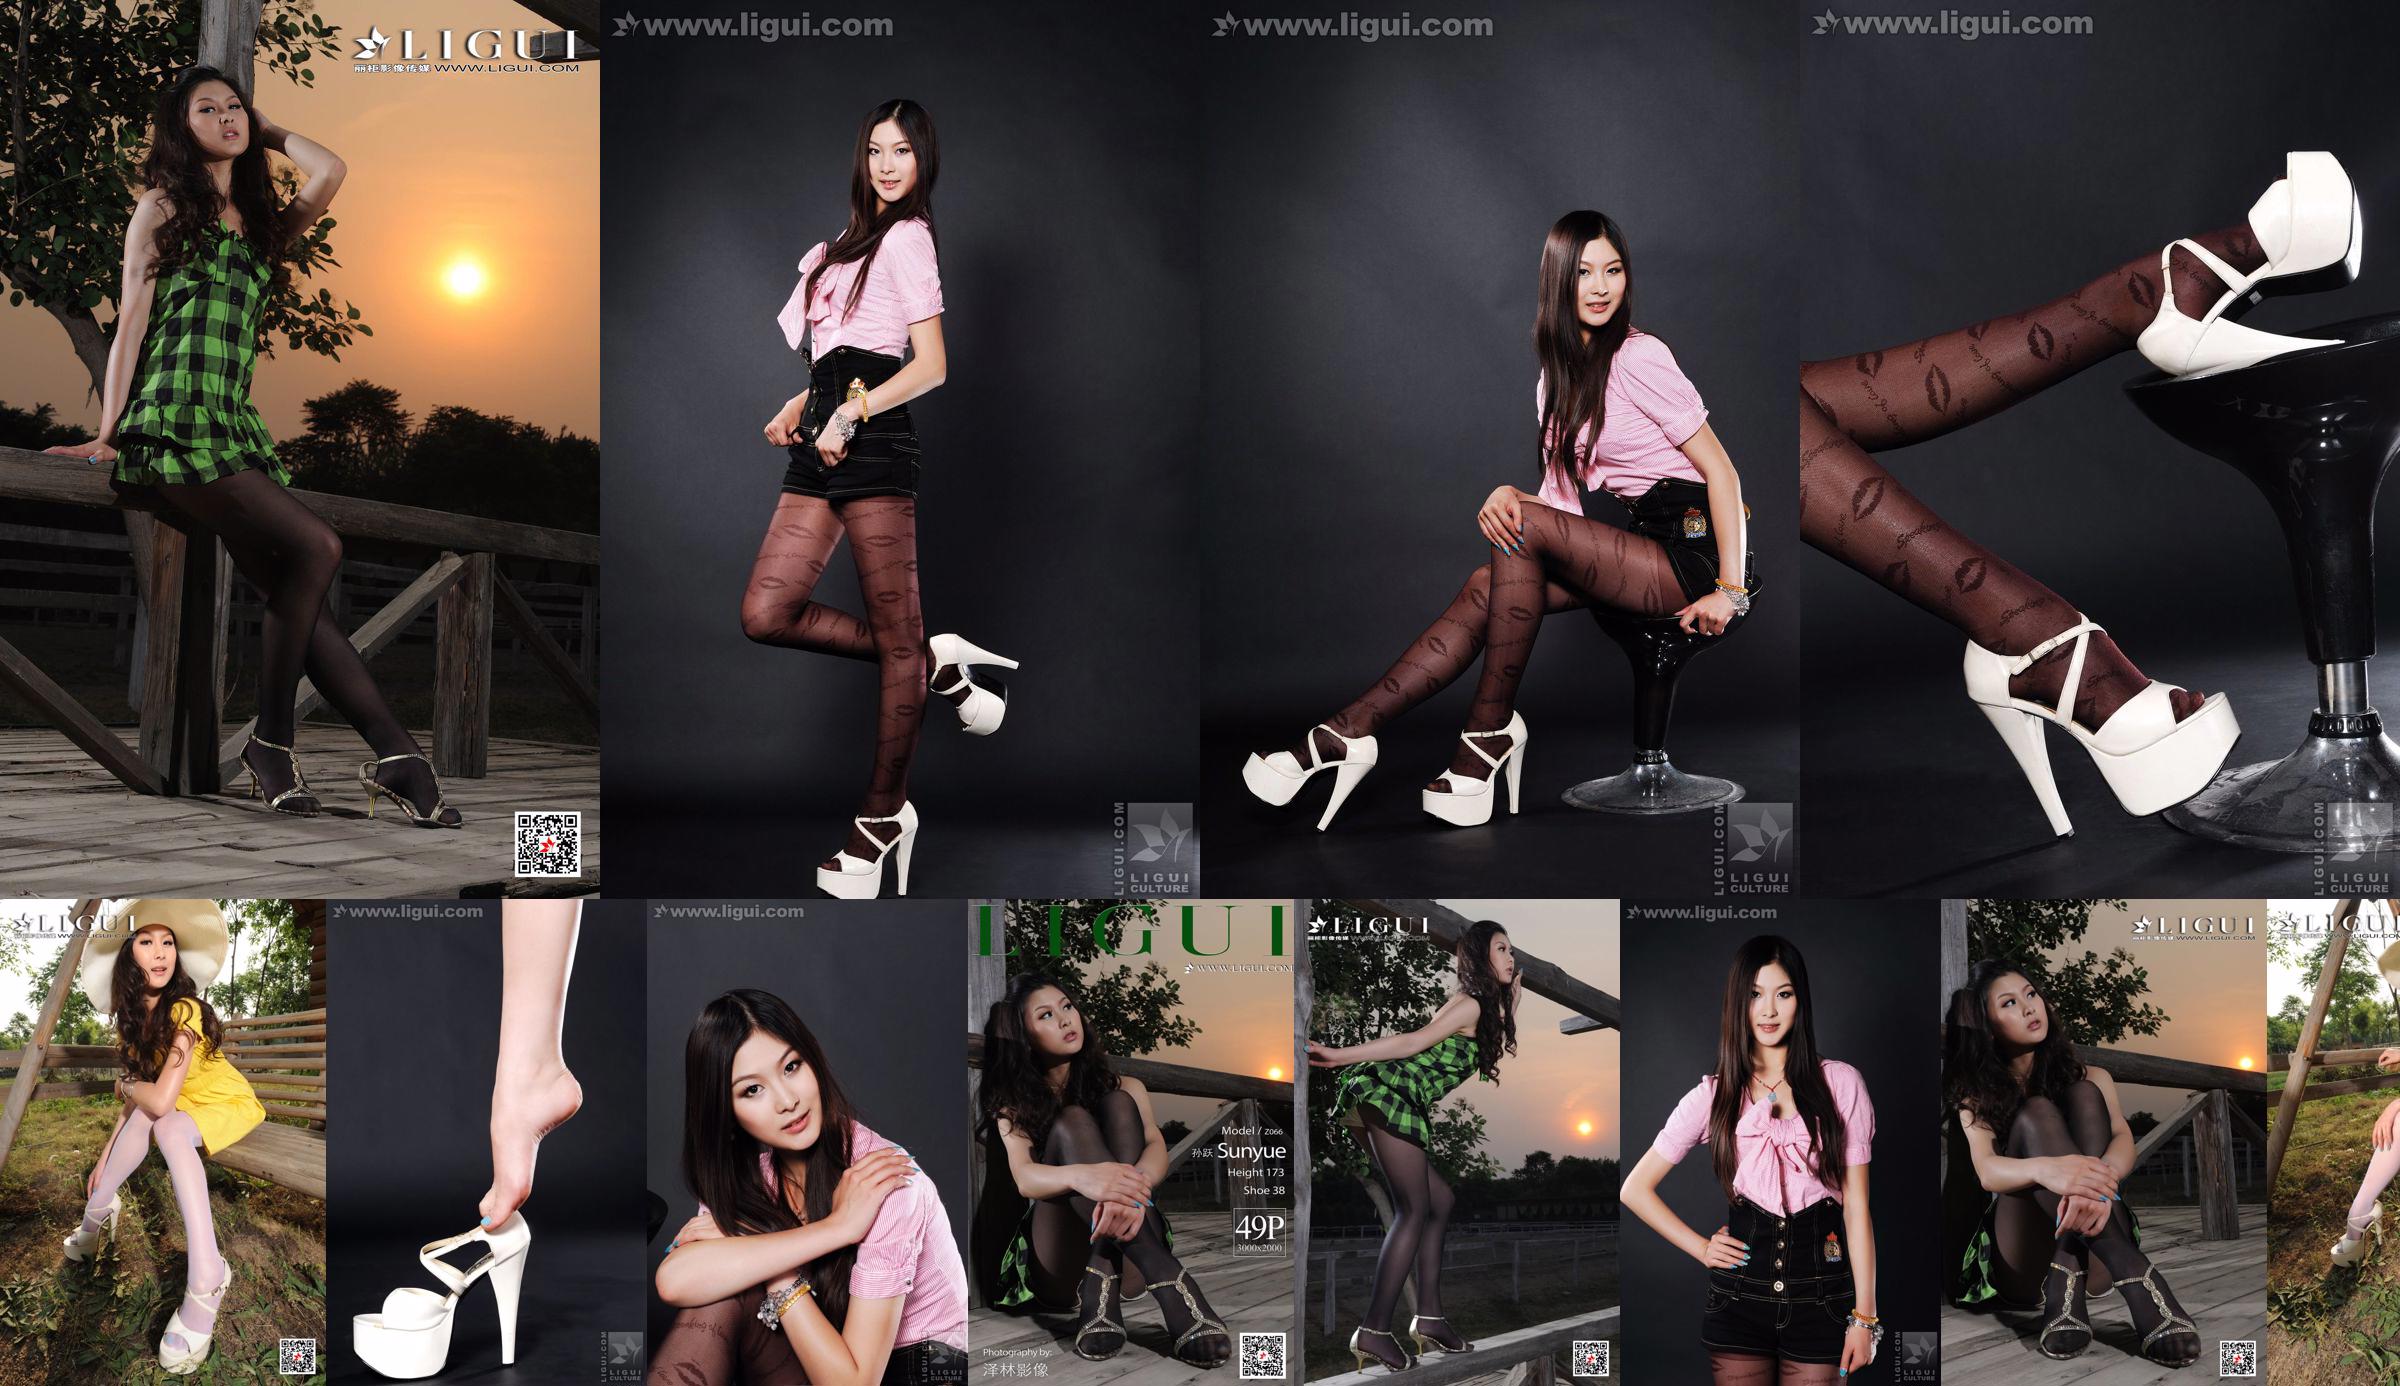 Người mẫu Sun Yue "Sexy and Glamorous Stockings" [丽 柜 LiGui] Ảnh Chân Dung Ngọc Bích và Chân Ngọc Xinh Đẹp No.4b3ced Trang 25